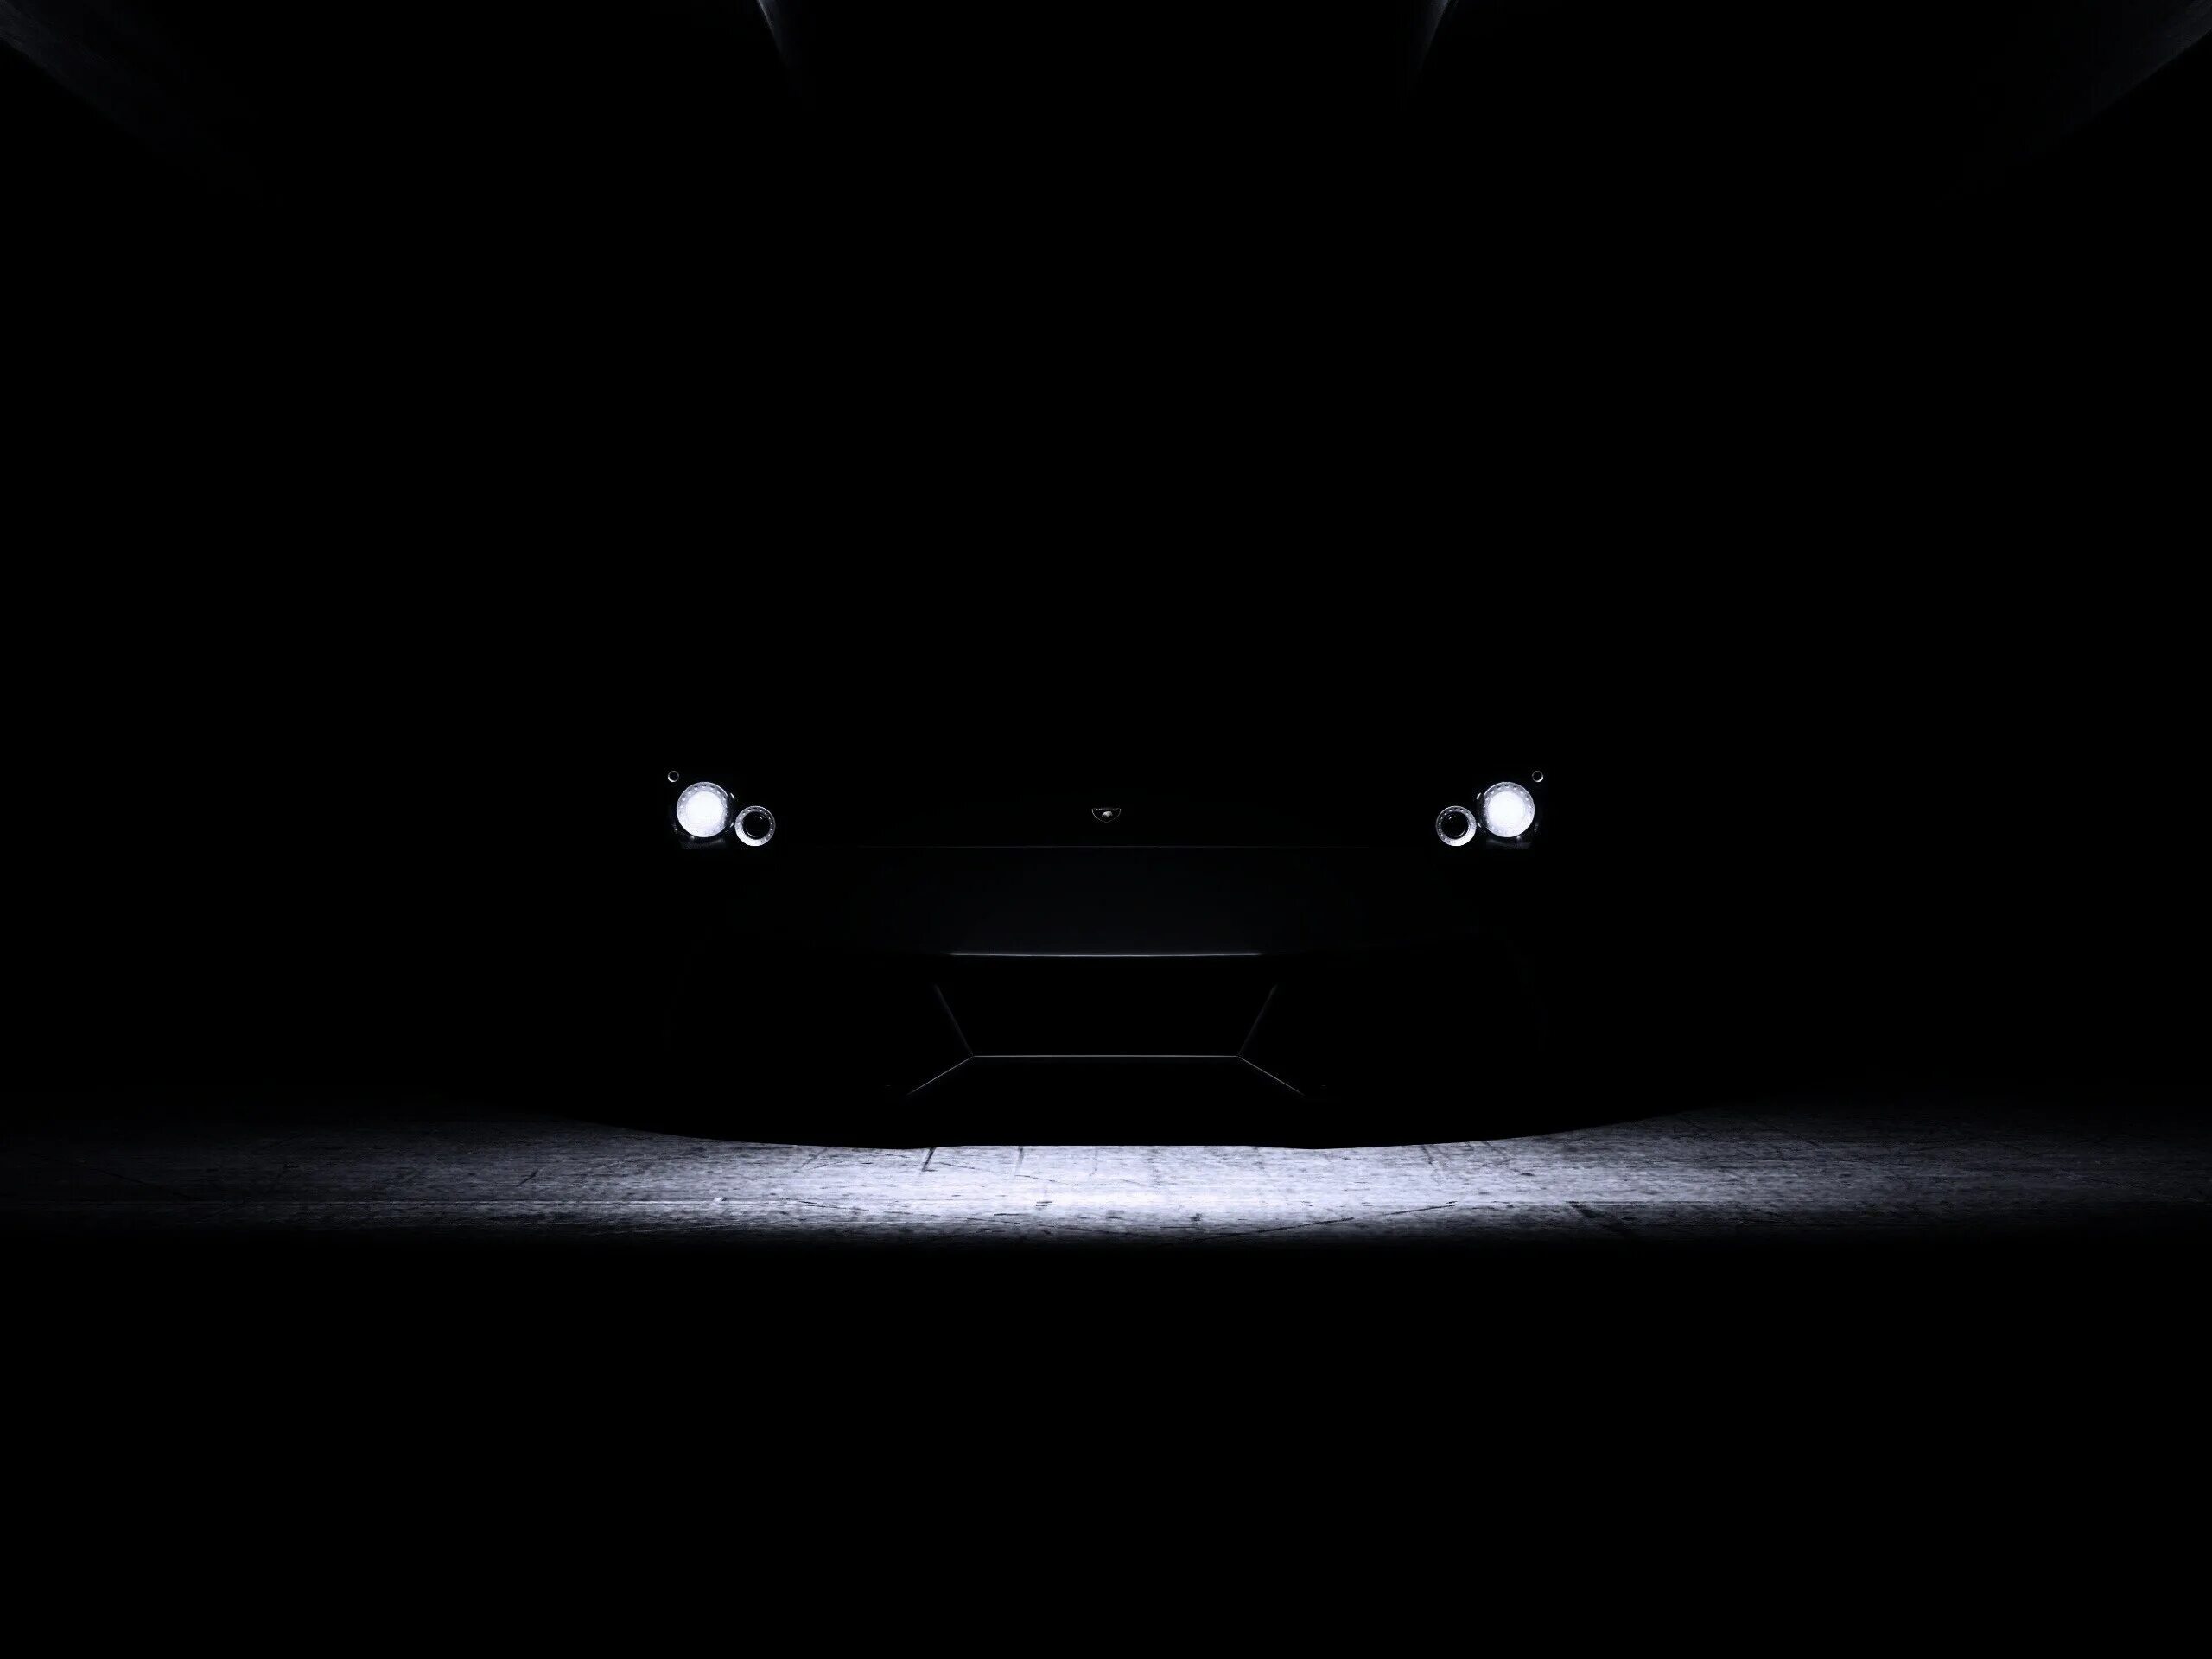 Фары в темноте. Машина в темноте. Фары машины в темноте. Черная машина в темноте. Фары черной машины